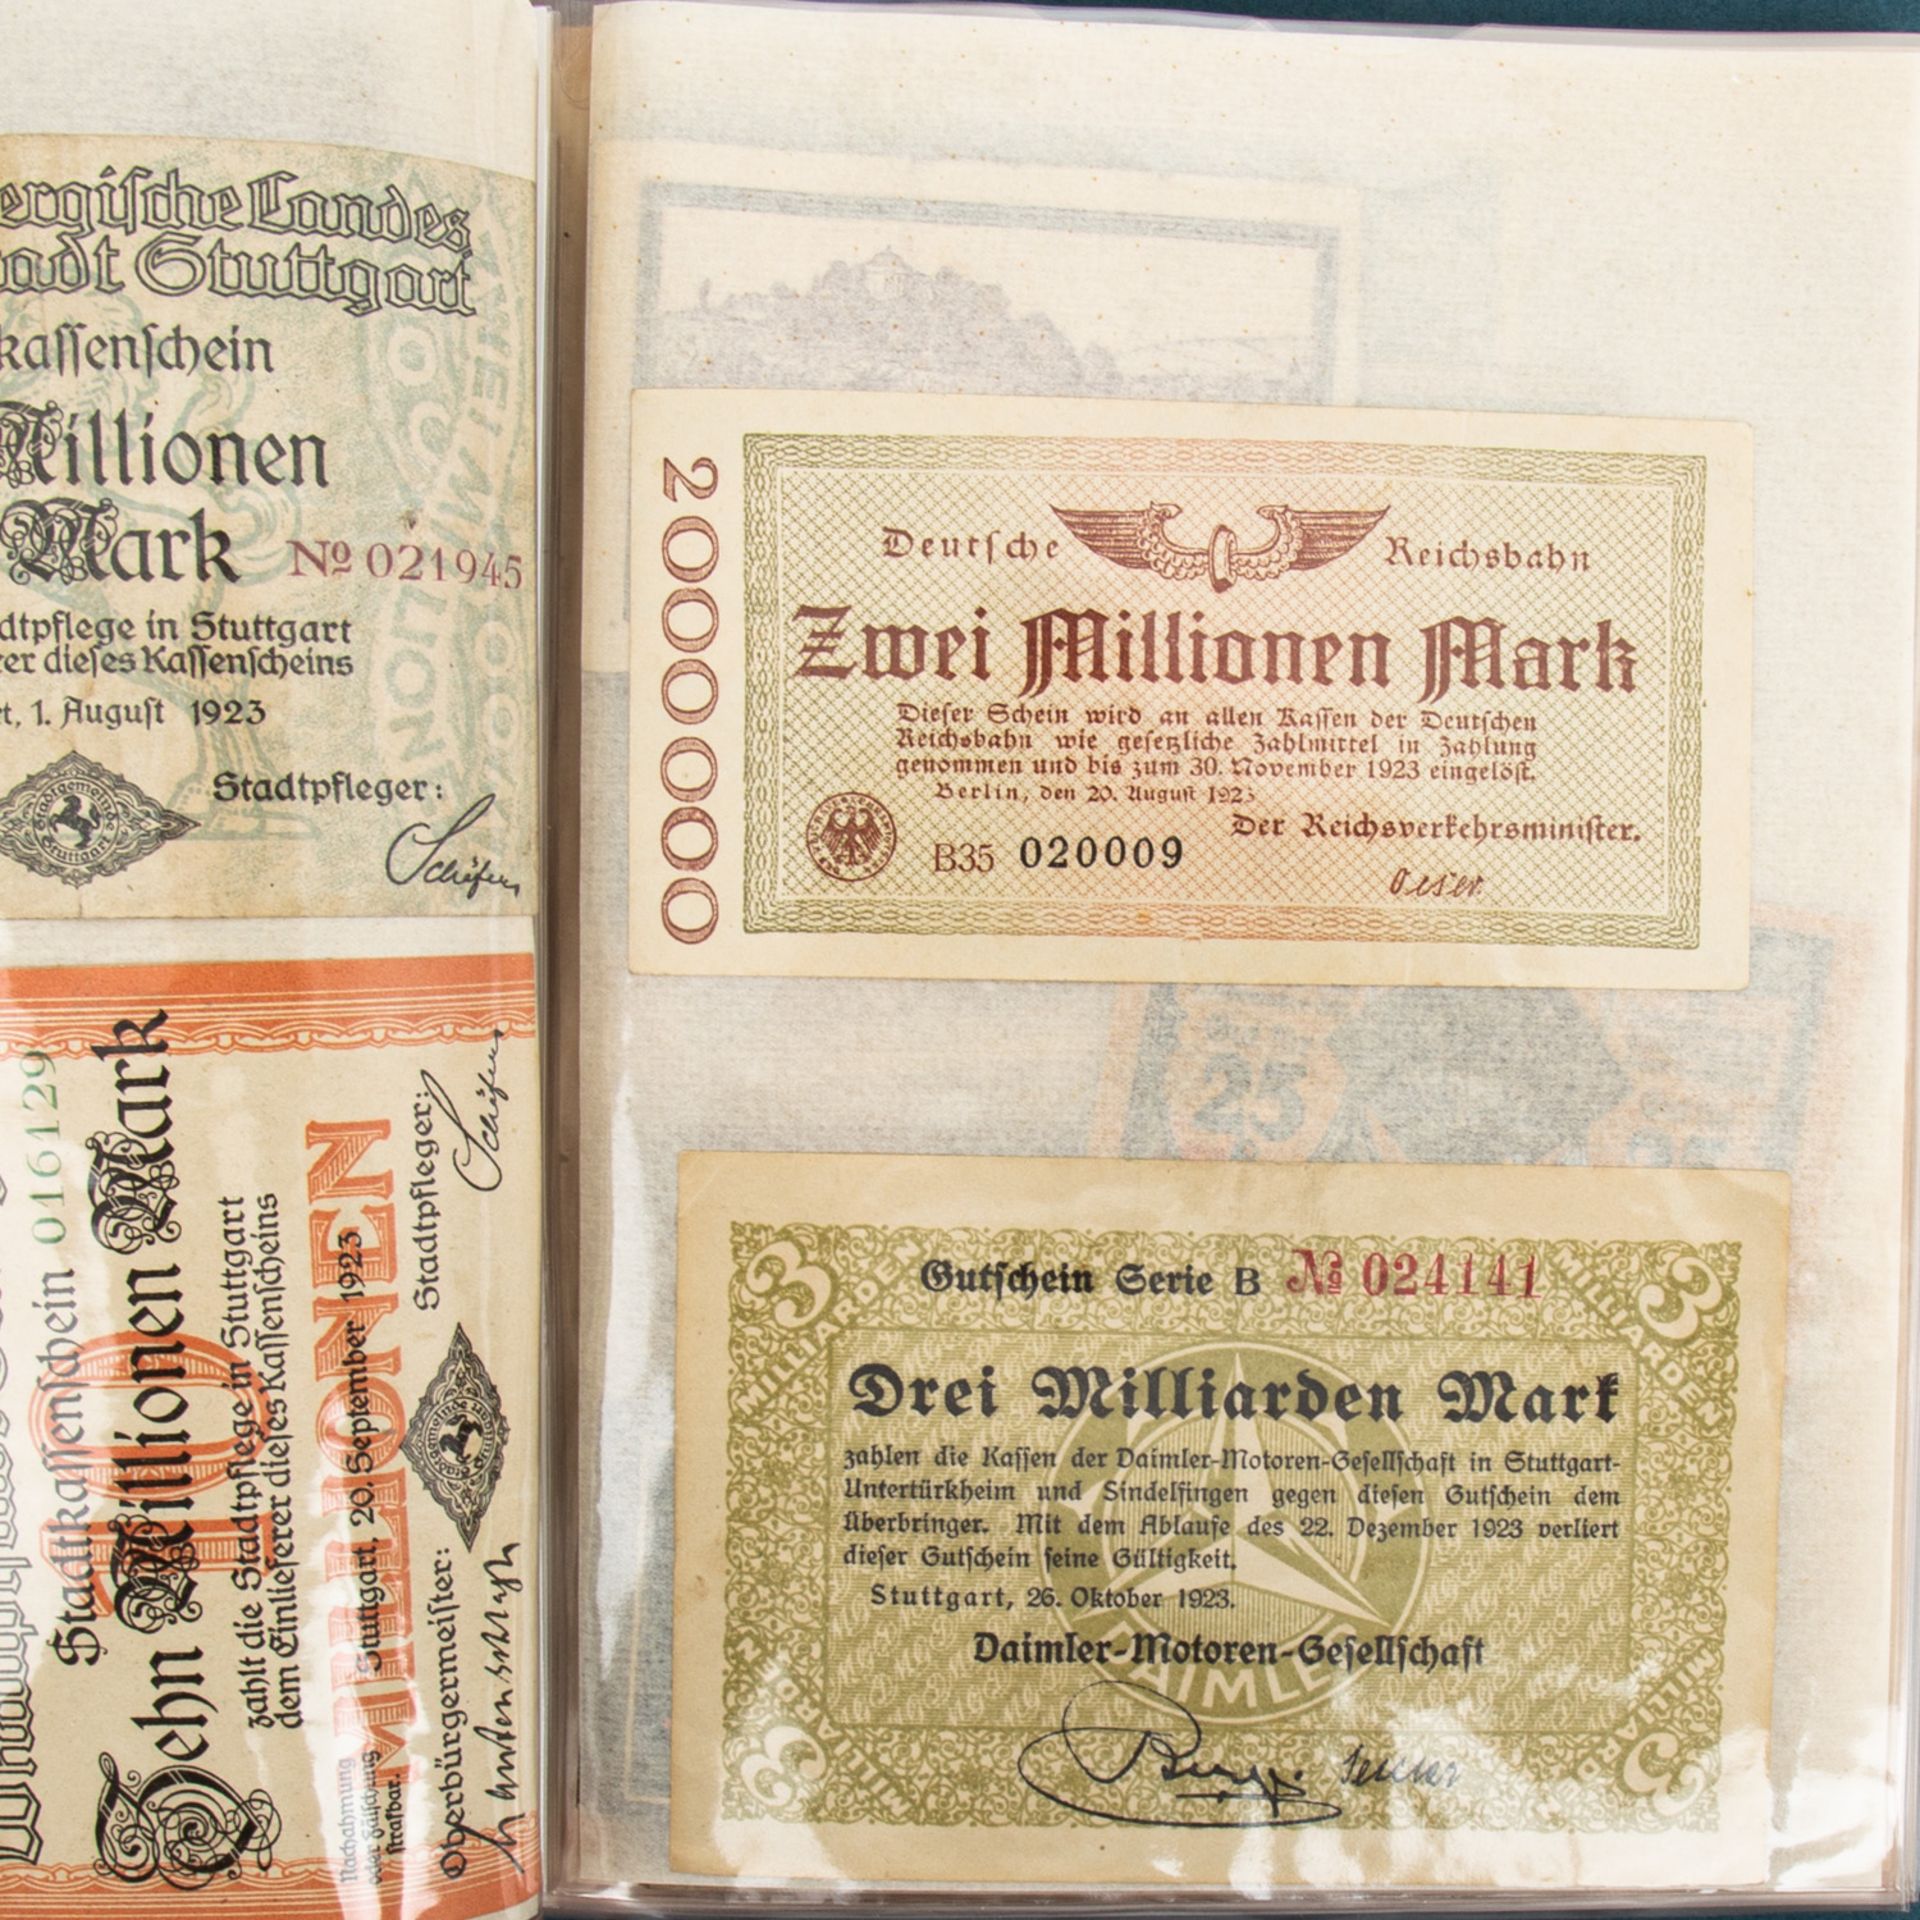 Banknotensammlung - Kleines Album, darunterStuttgart Stadtkassenscheine, diverses Krie - Image 3 of 4